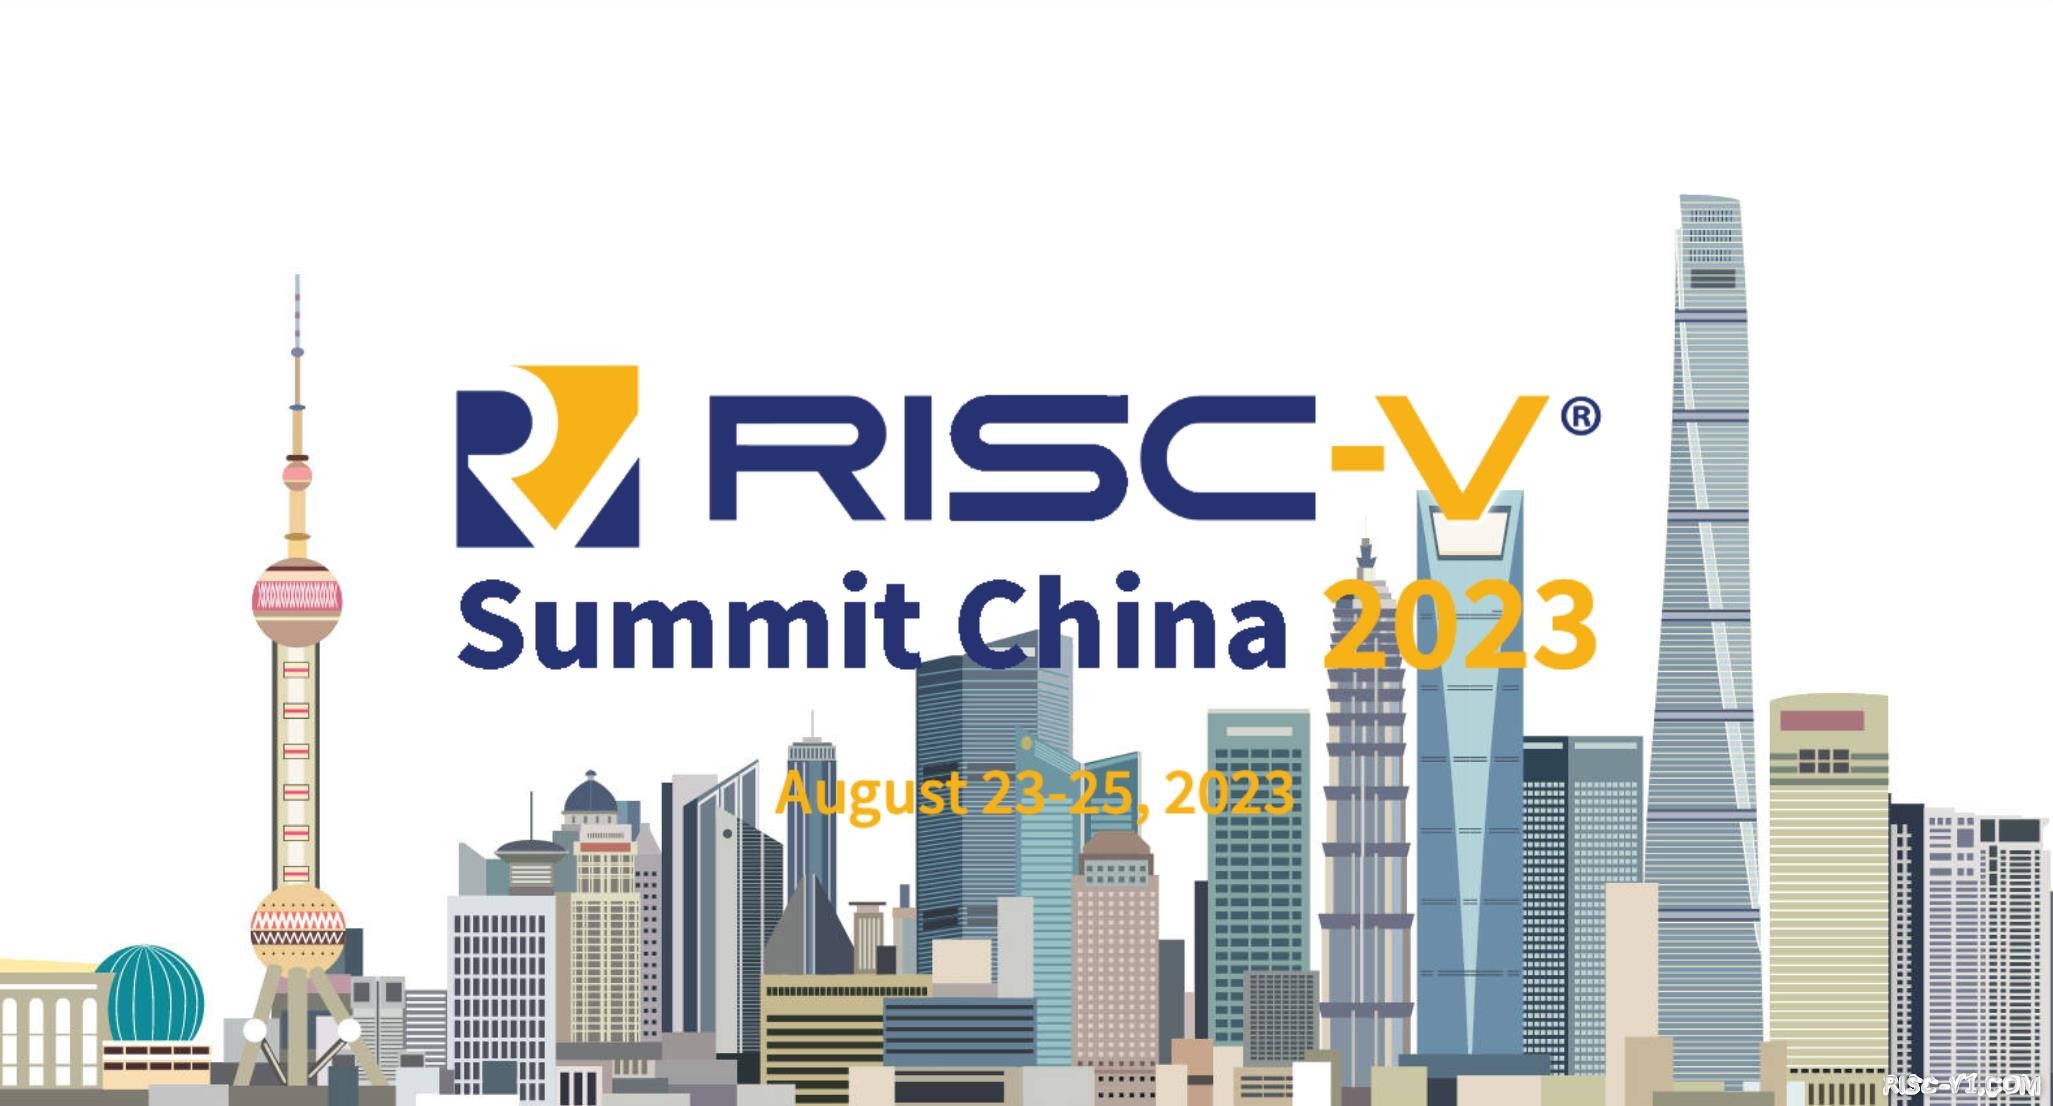 社区公告-RISC-V 中国峰会2023 8月即将举办【第三届RISC-V中国峰会】【RISC-V Summit China 2023】risc-v单片机中文社区(3)